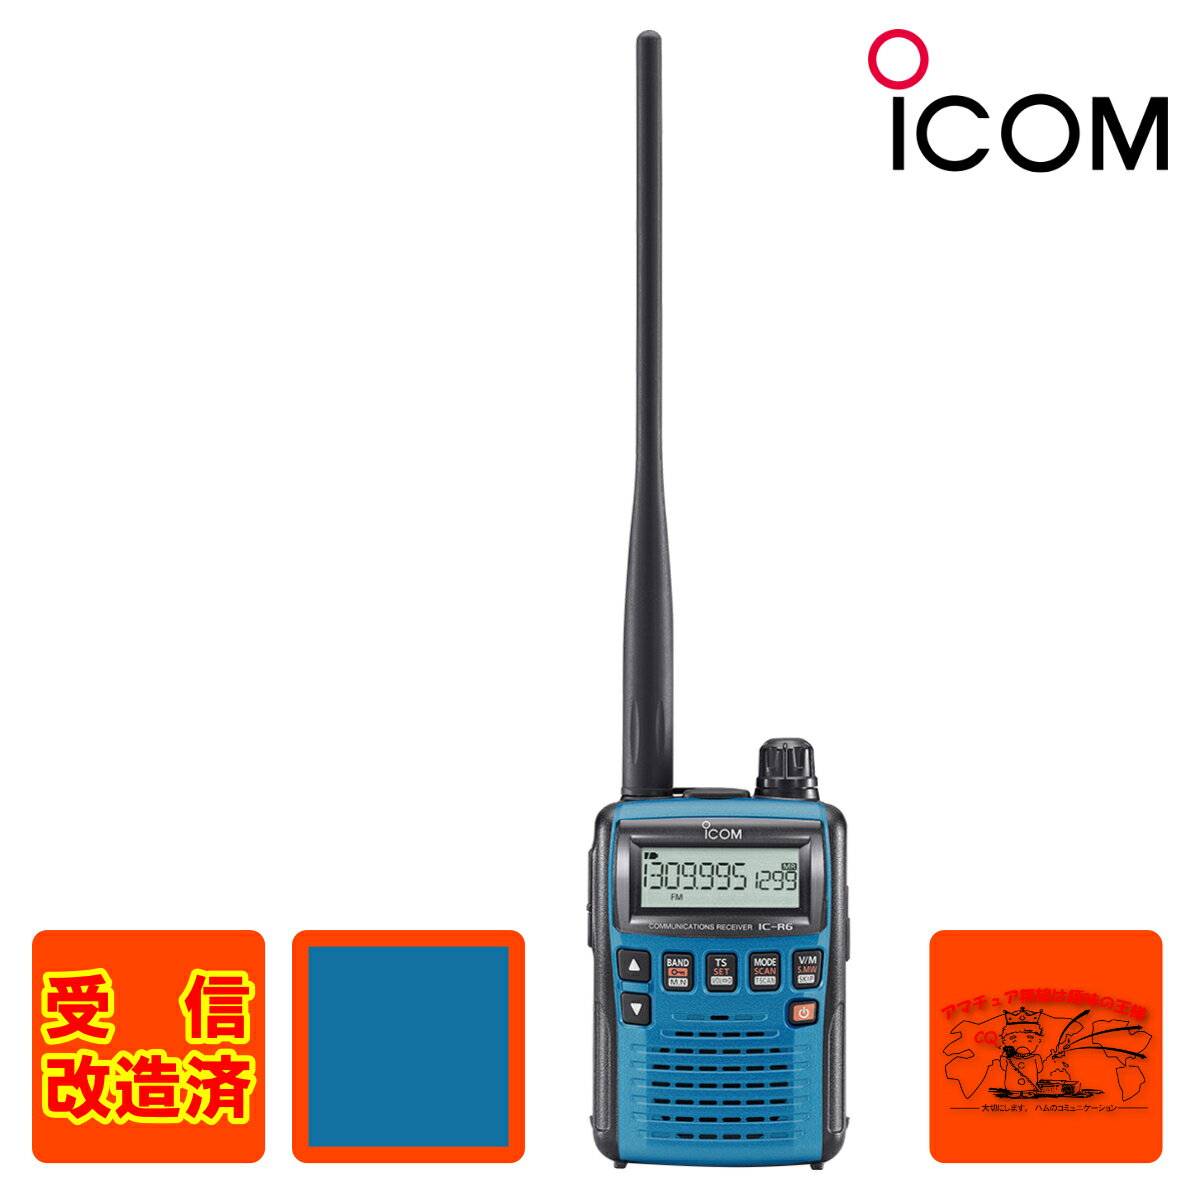 受信改造済となります （※受信改造とはIC-R6の受信可能な周波数帯の一部歯抜けになっている部分を受信可能にすることです） 0.100〜1309.995MHz帯をカバー 0.100〜1309.995MHz (一部周波数帯を除く)をAM/FM/WFMでカバー。ラジオ放送、、エアバンド、各種ユーティリティ無線まで、様々な受信を楽しむことができます。 BTL回路&大型スピーカー 低周波出力回路にはBTLアンプ、さらに、36φの大型スピーカーを搭載することで、AF出力150mW以 上の大音量を実現。屋外や車の中でも、快適な受信が可能です。 パワーセーブ機能 受信信号の有無検知時間を大幅に短縮することで、消費電流を低下させるパワーセーブ機能を装備。 また、AUTO選択時には、パワーセーブ開始から約1分間、信号がないと自動的にデューティ比を変 更し、待ち受け時のバッテリー消耗を軽減します。 アルカリ乾電池で約19時間※2の受信が可能 付属のNi-MH(ニッケル水素)電池で約15時間※1の受信を実現。アルカリ乾電池なら、IC-R5の約10 時間(アルカリ乾電池使用時)を大幅に上回る約19時間※2の長時間受信が可能です。 ※1 AF出力50mW、外部スピーカー(8Ω負荷)接続時。 ※2 乾電池の種類等によります。 100ch/秒の高速スキャン（VFOモード時） スキャンのバリエーションも、さらに充実しています。しかも、前モデルIC-R5(30ch/秒)を大幅に上回る 100ch/秒の高速スキャン(VFOモード時)を実現。よりスピーディに信号をキャッチすることができます。 多彩なスキャン機能 ●フルスキャン●バンドスキャン●プログラムスキャン●オートメモリーライトスキャン●メモリースキャン ●バンクスキャン●SKIRスキャン●プライオリティスキャン●トーンスキャン●リンクスキャン 空線キャンセラー 無通話時に聞こえる耳障りな空線信号を排除する空線キャンセラーを装備。また、IC-R5の空線キャン セラーを、さらに強化(Train2を追加)し、より多彩な鉄道無線を快適に受信することが可能。もちろん、 MCA無線などで使用されているMSKの制御信号にも対応するなど、シグナリング機能が充実しています。 ※空線キャンセラー、トーンキャンセラー機能は、全ての空線信号を検出するものではありません。 VSC機能（ボイススケルチコントロール） スキャン中に制御信号や無変調信号など、目的外の信号だけを自動的にスキップさせ、音声の出ている信号だ けをとらえることができます。しかも、各種シグナリング機能と併用することも可能です。 AFフィルター 高音域のノイズを抑え、快適な受信を可能にするAFフィルターを装備。特に弱い信号を受信している時や長時 間の受信に威力を発揮します。 外部電源端子を装備 付属のNi-MH(ニッケル水素)電池をバッテリーチャージャー(ACアダプター/付属品)またはバッテリー チャージャースタンド(オプションのBC-194)を使用して充電しながら、受信することができます。また、シガ レントライターケーブル(オプションのCP-18)を接続すれば、車での使用も可能です。 豊富なメモリー＆フレキシブルバンクシステム 通常メモリー1300ch、スキャンエッジ25組50chオートライトスキャン用メモリー200chを装備。しかも、 EEPROMを採用しているので、電池が切れてもメモリー内容は保護されます。また、通常メモリーを最大 100chまでメモリーできるフレキシブルバンクシステムを採用。バンクは最大22個まで設定できます。 AMラジオ用バーアンテナ内蔵 AMラジオ放送受信用バーアンテナを内蔵しているので、外部アンテナなしでも、快適にAMラジオ放送 を楽しむことができます。また、FMラジオ放送など中波帯以外の周波数では、イヤホンのコードをアンテ ナにした受信が可能です。 CI-Vによる外部制御が可能 オプションのCT-17を使用することで、IC-R6とRS-232Cタイプのシリアルポートを持つパソコンを 接続することが可能。受信周波数、受信モード、スケルチの状態などをパソコンで制御することができます。 その他の機能群 ●モード/チューニングステップ自動設定機能 ●CTCSS、DTCS、トーンリバースに対応 ●オートスケルチ機能 ●選択可能な14種類のチューニングステップ ●スケルチモニター機能●オートパワーオフ機能 ●電池残量表示機能 ●キーロック機能 ●RFアッテネーター ●タイマー付きLCDバックライト 付属品 ●アンテナ ●バッテリーチャージャー(ACアダプター/BC-196)●Ni-MHにッケル水素)電池 ●ベルトクリップ ●ハンドストラップ ゼロから始める受信入門 おもしろ無線はやめられない！ 消防無線、航空無線、鉄道無線、船舶無線、防災行政無線、バス無線、タクシー無線 マスコミ無線、ワイヤレスマイク、盗聴波・・・etc. 受信機が1台あればぜ〜んぶ聞けちゃう！ 1,000円（税込） 特別企画　VR-160活用マニュアル おもしろ無線受信ガイド ver.11 ビギナーからベテランまで受信の指南書 いま話題の新型機を比較 「IC-R6vsVR-160」どっちを選ぶ 日本で唯一の受信マンガ「おもしろ無線のNORI子ちゃん」 1,500円（税込） はじめての受信機操作ガイド IC-R6、DJ-X8、VR-160を機種ごとに写真とわかりやすい言葉で解説。 ●ベーシック編「人気3機種の操作方法」 ●エキスパート編「3機種の機能を比べる受信機解析白書」 ●ステップアップ編「もっと聞くためのテクニック」 1,300円（税込）